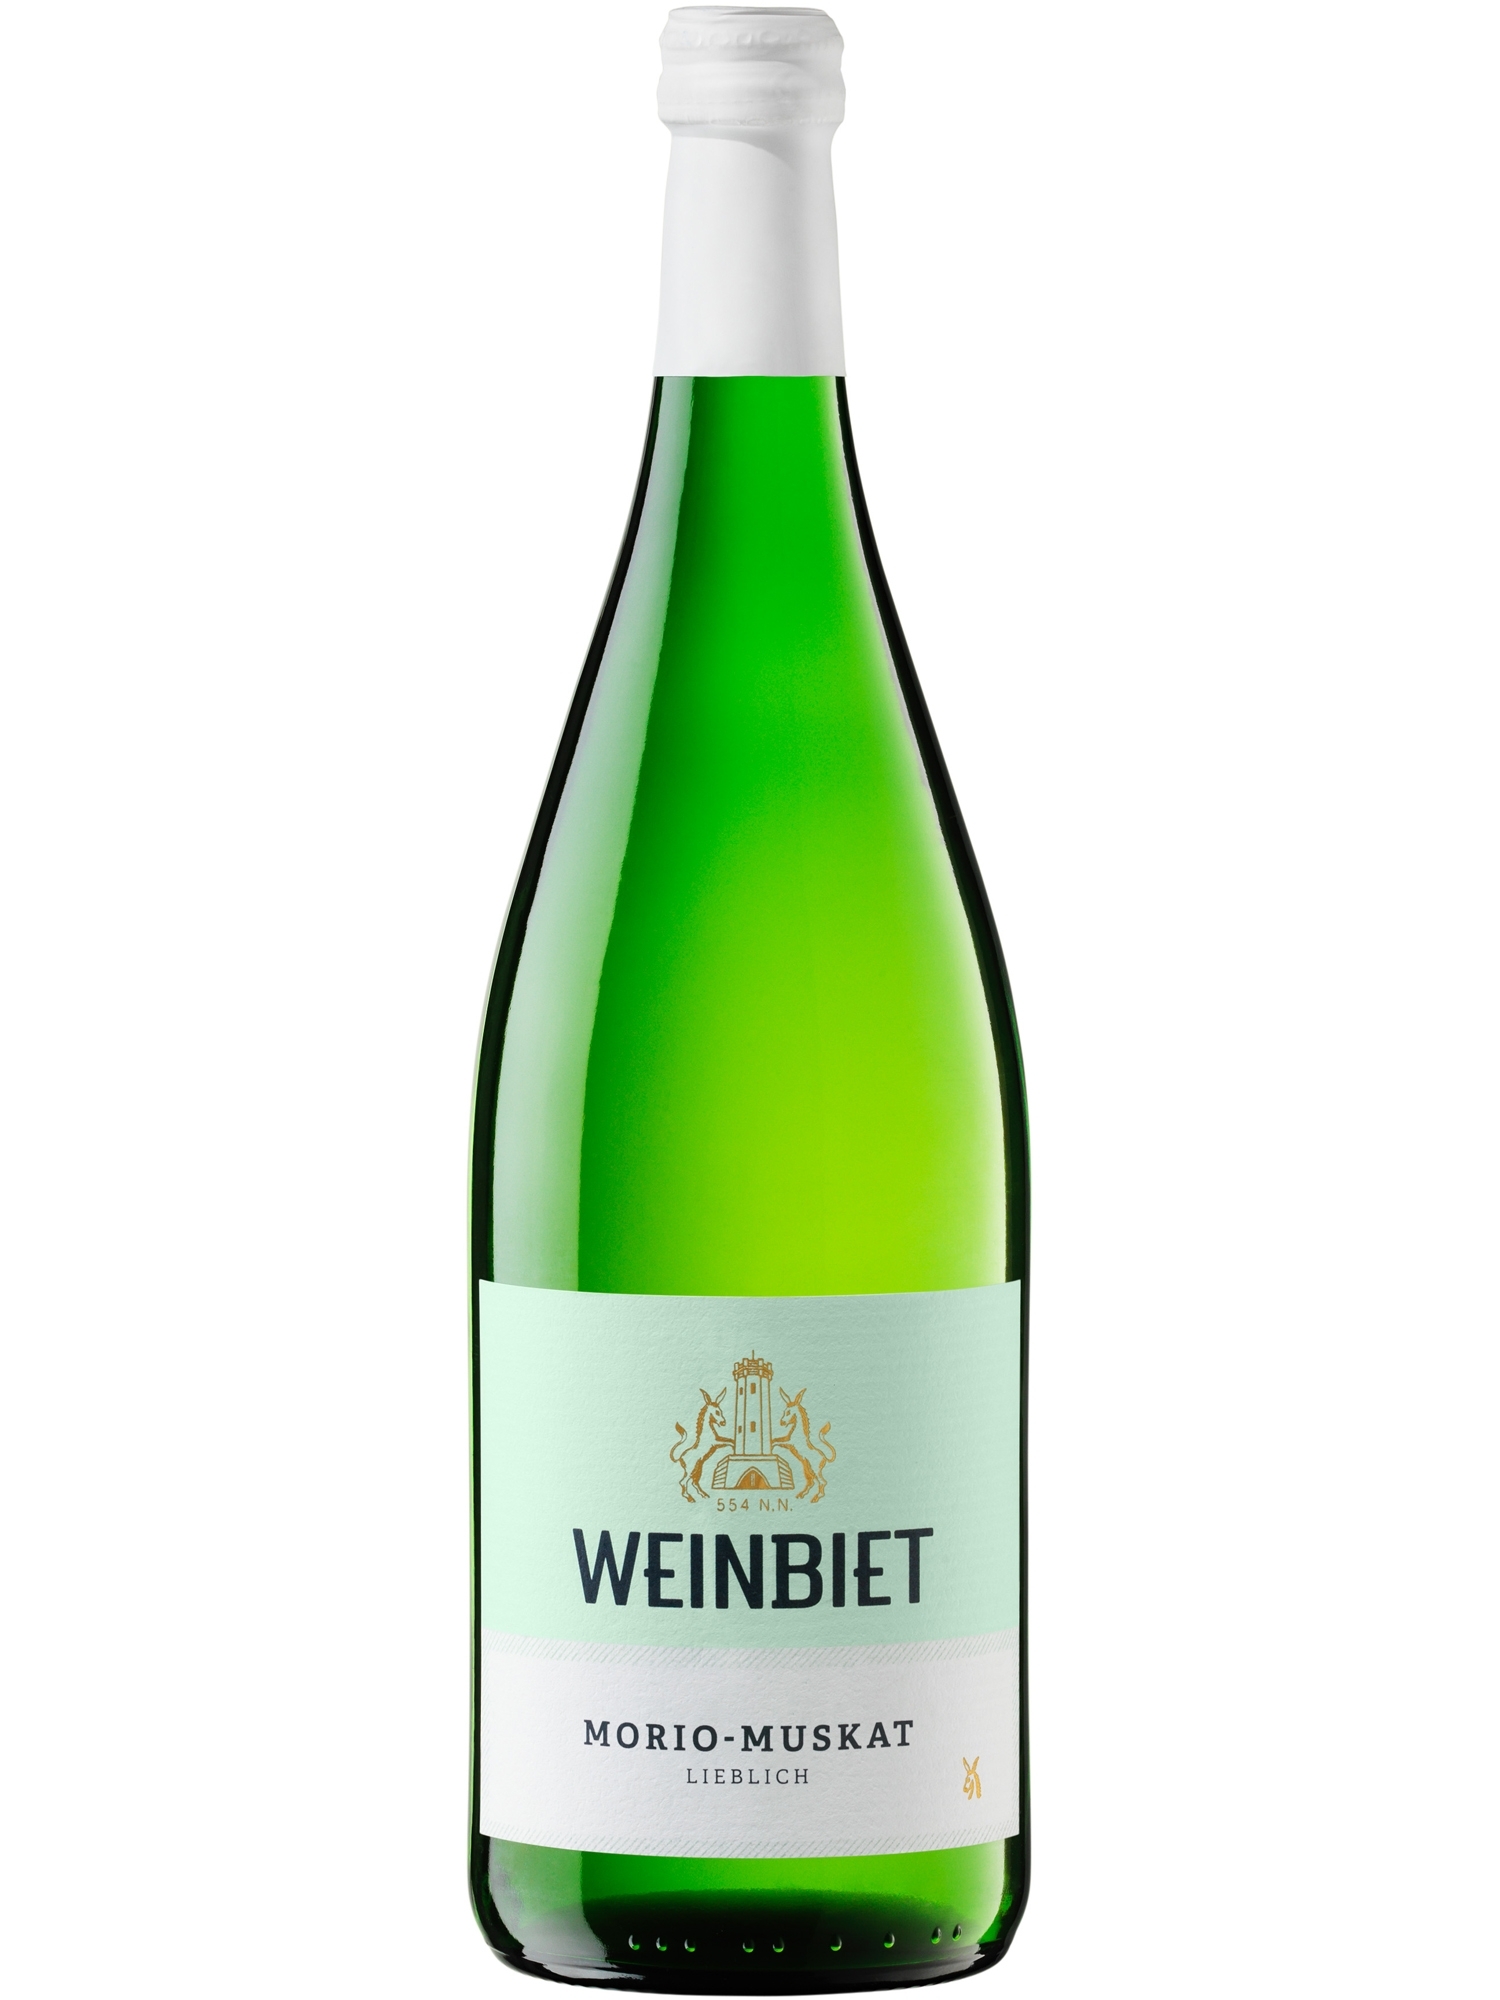 morio-muskat lieblich - Weinbiet Online | Wein Pfalz